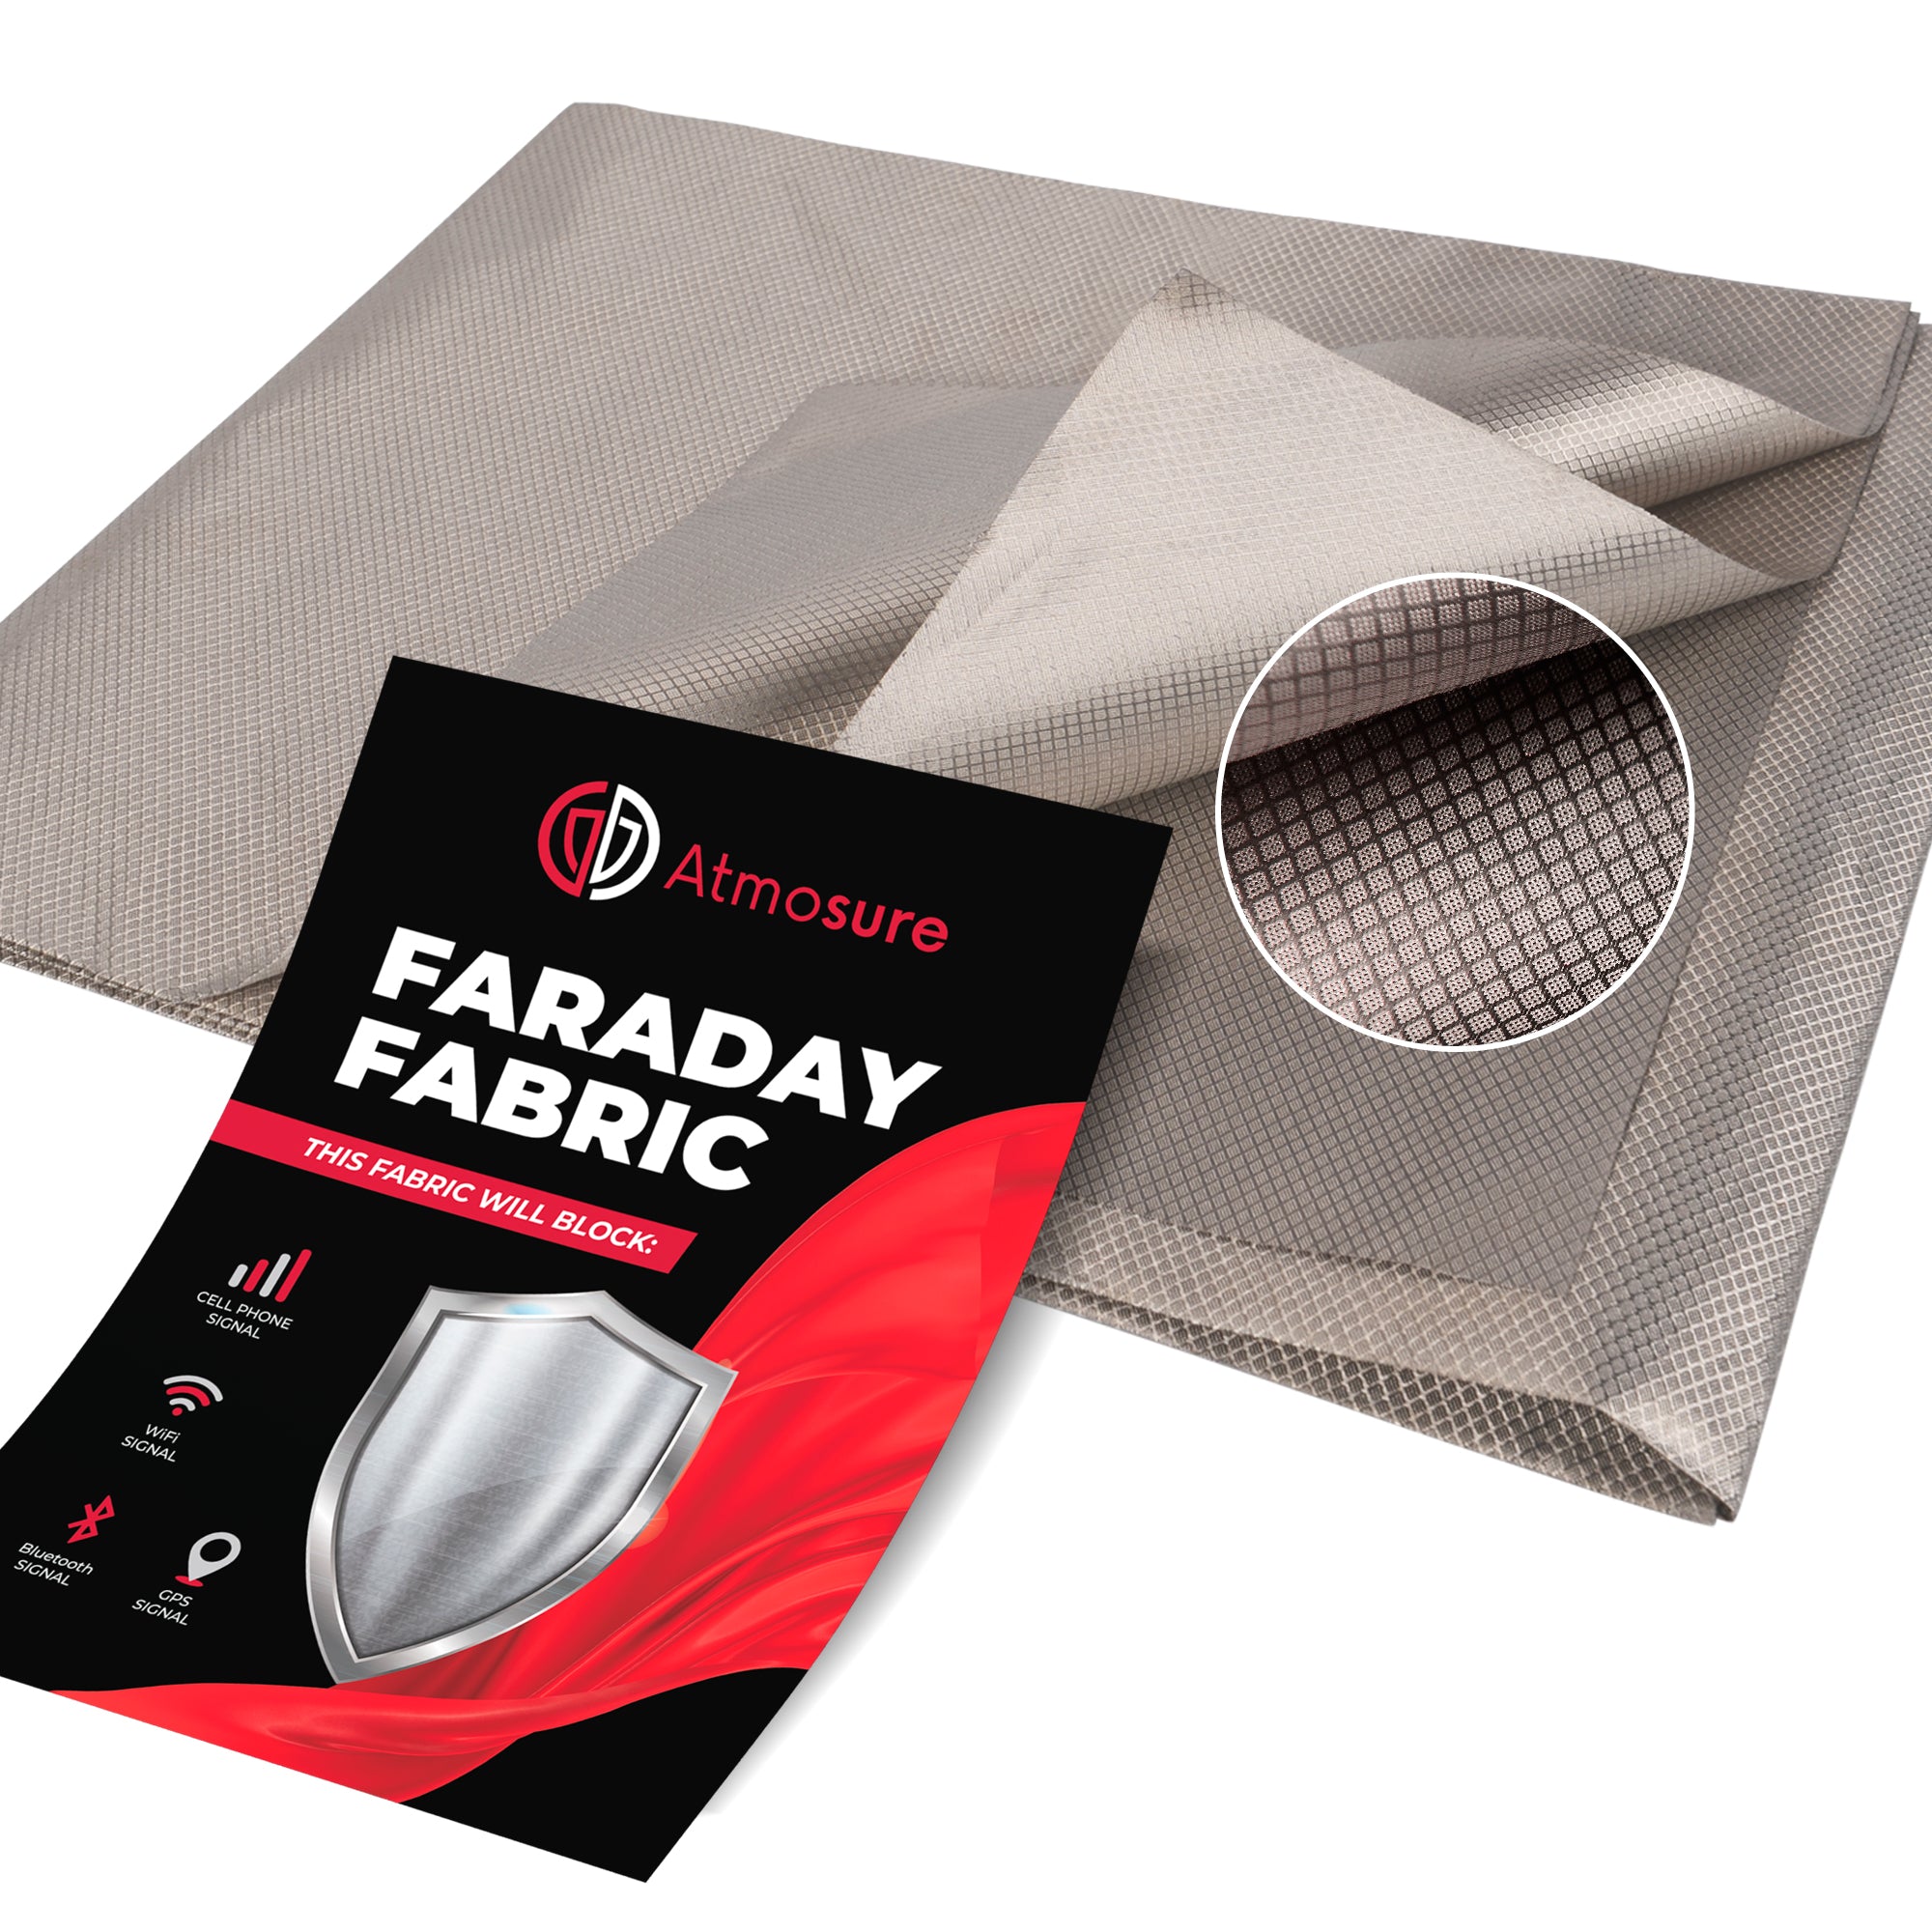 Faraday Fabric (44" x 36") — RF, EMI, & RFID Shielding for 99% EMF Protection